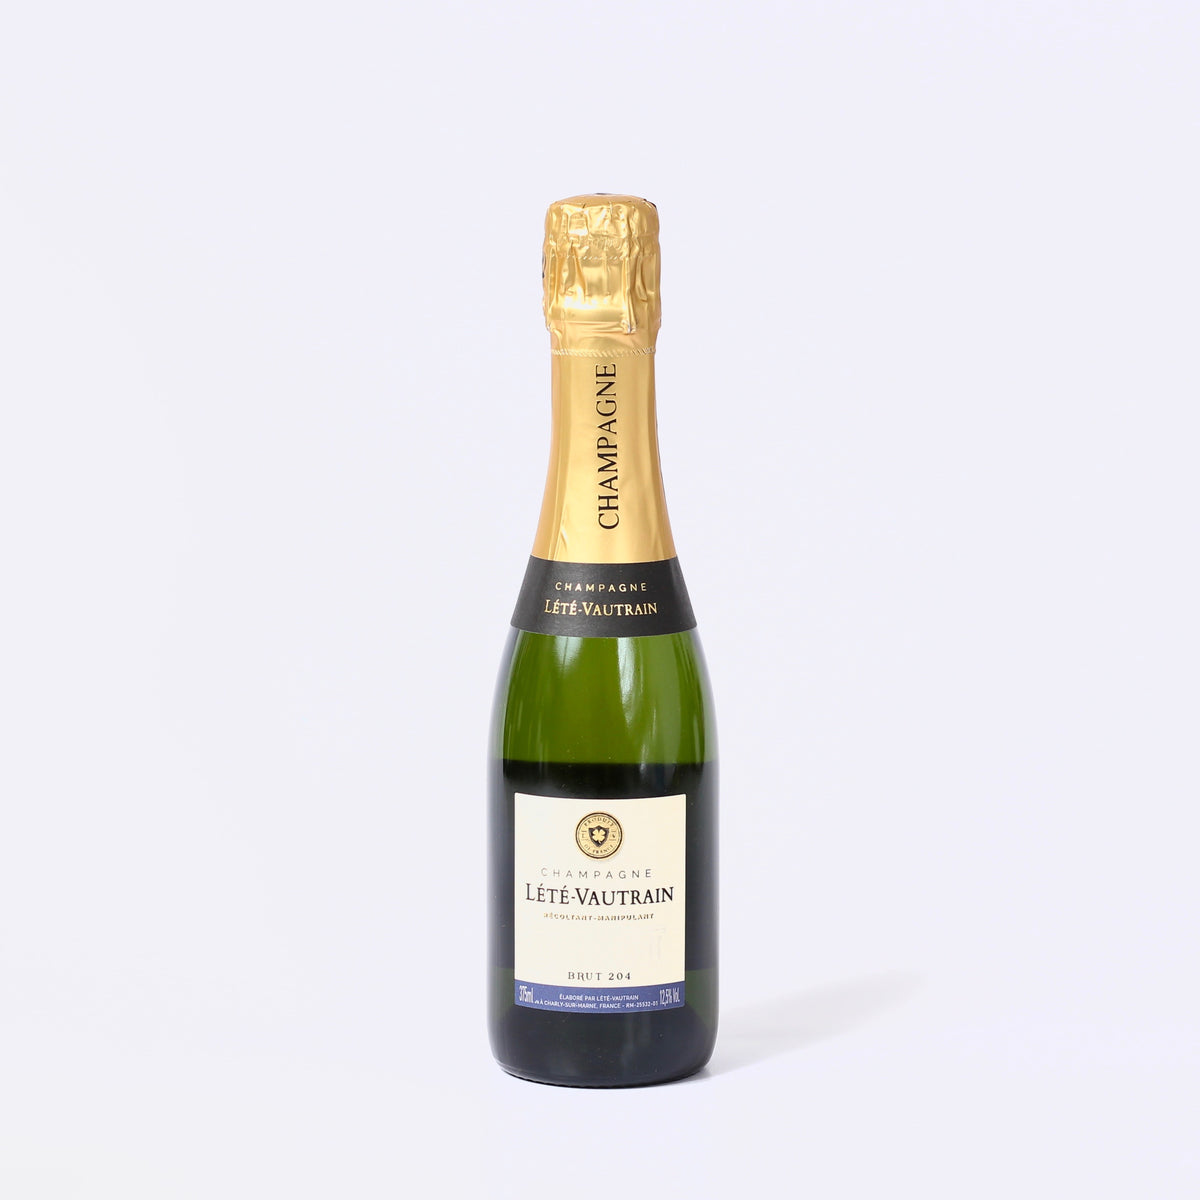 Champagne Lete-Vautrain Cote 204 Brut (37.5cl)